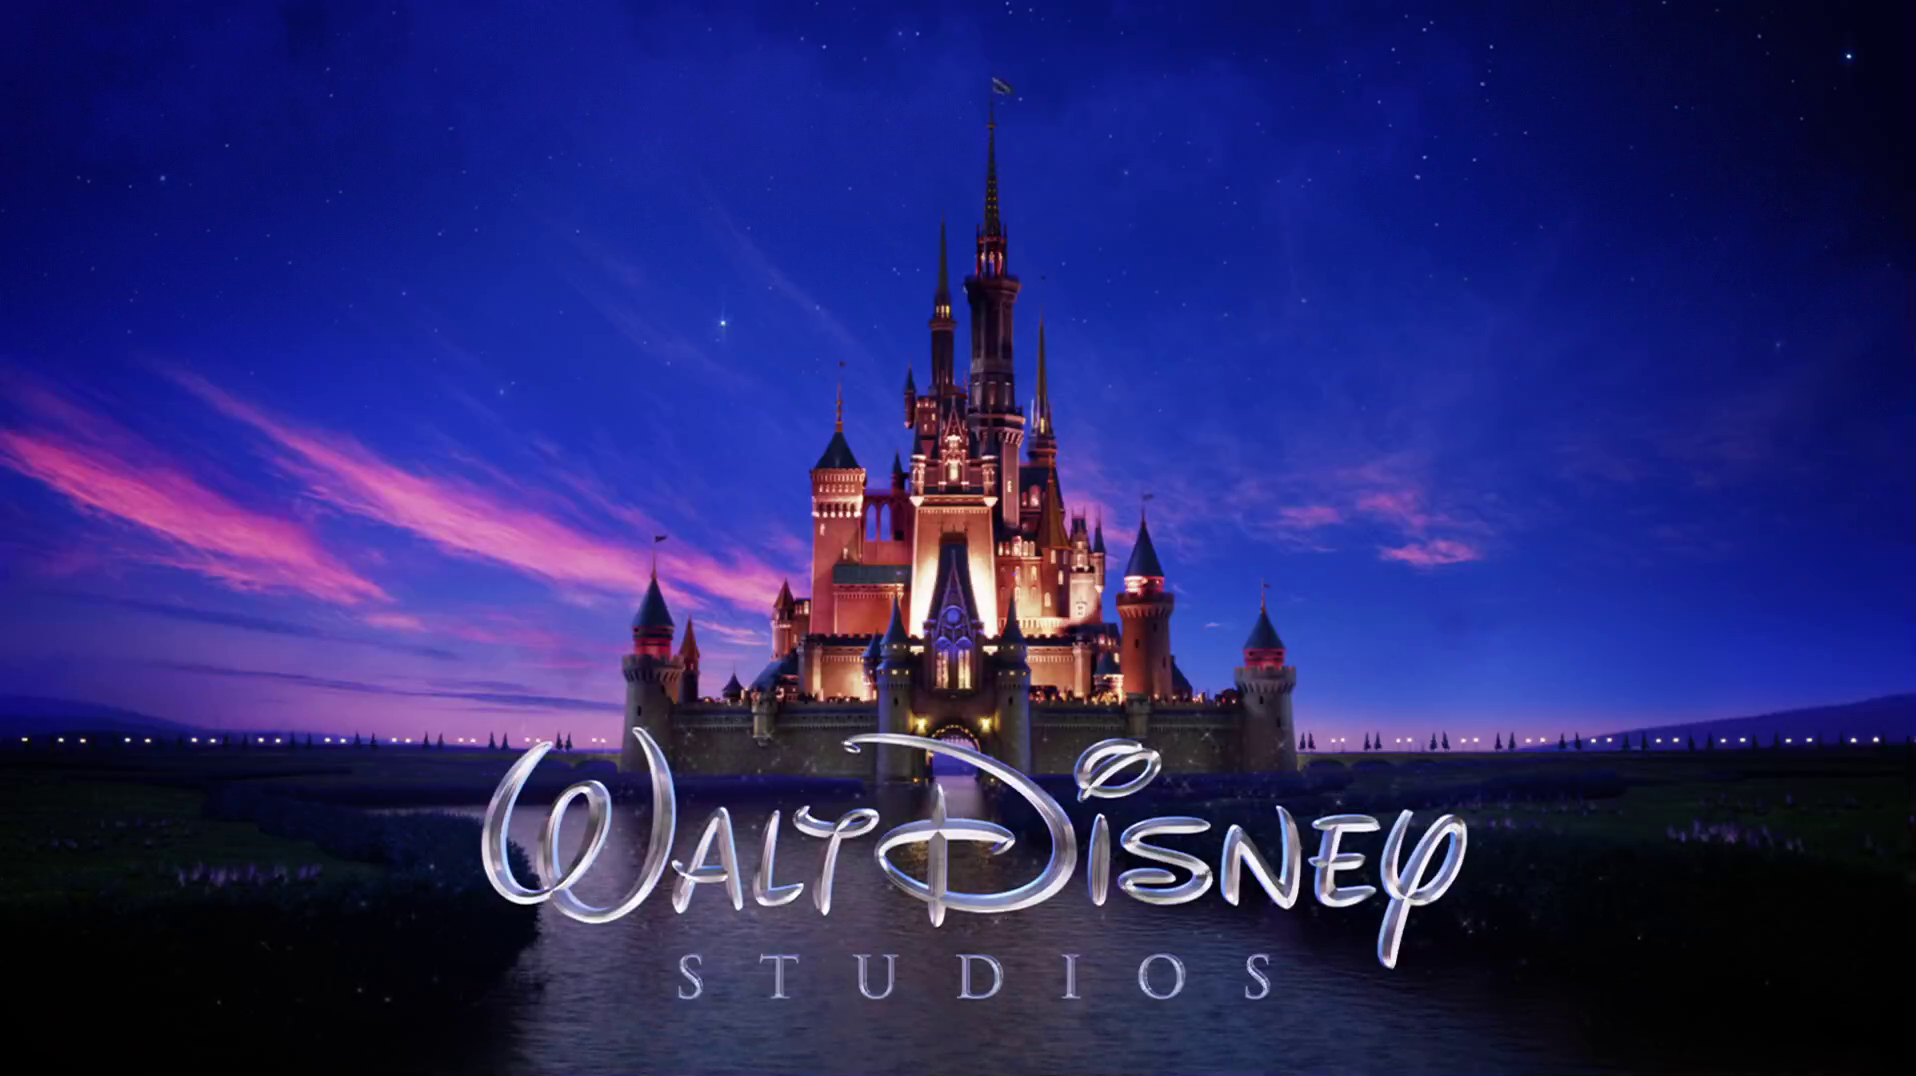 ΗΠΑ: Η Disney ακύρωσε επεισόδιο κινουμένων σχεδίων επειδή ένας χαρακτήρας αερίστηκε